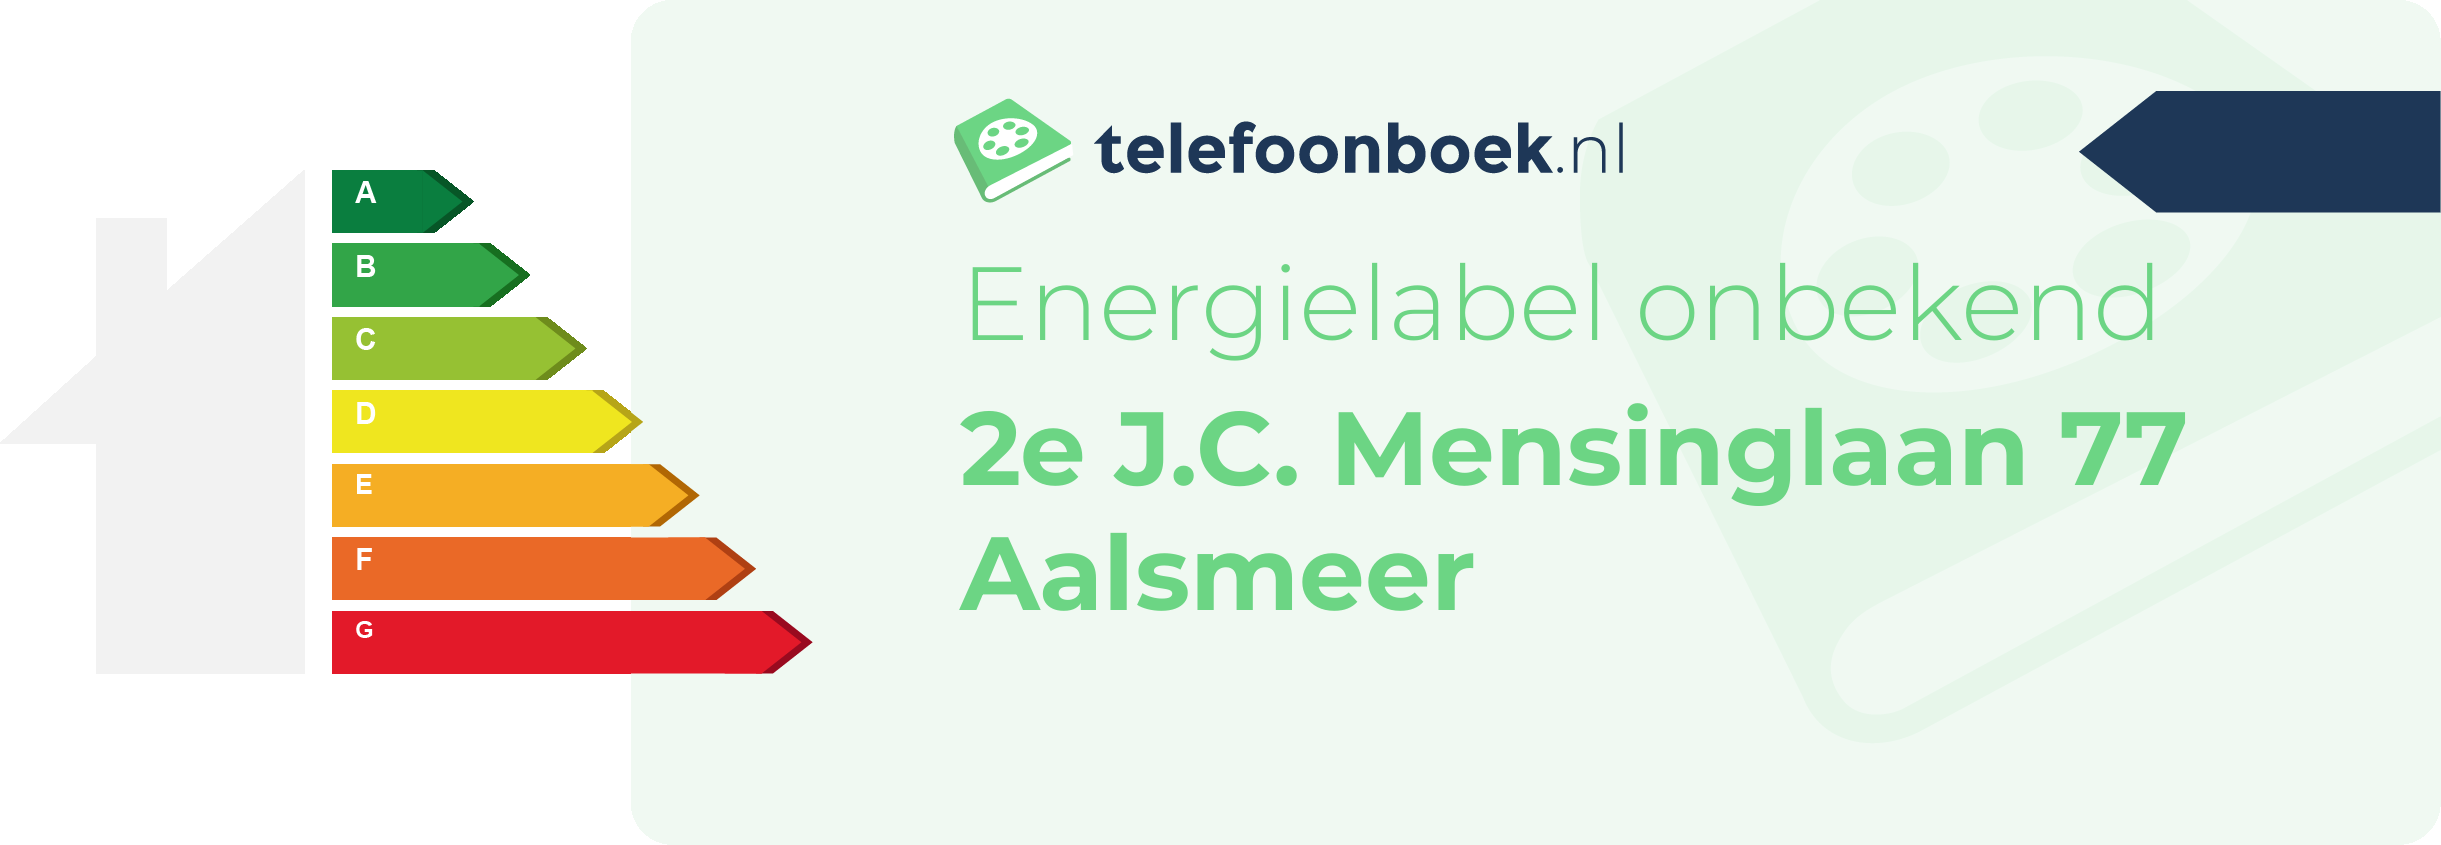 Energielabel 2e J.C. Mensinglaan 77 Aalsmeer